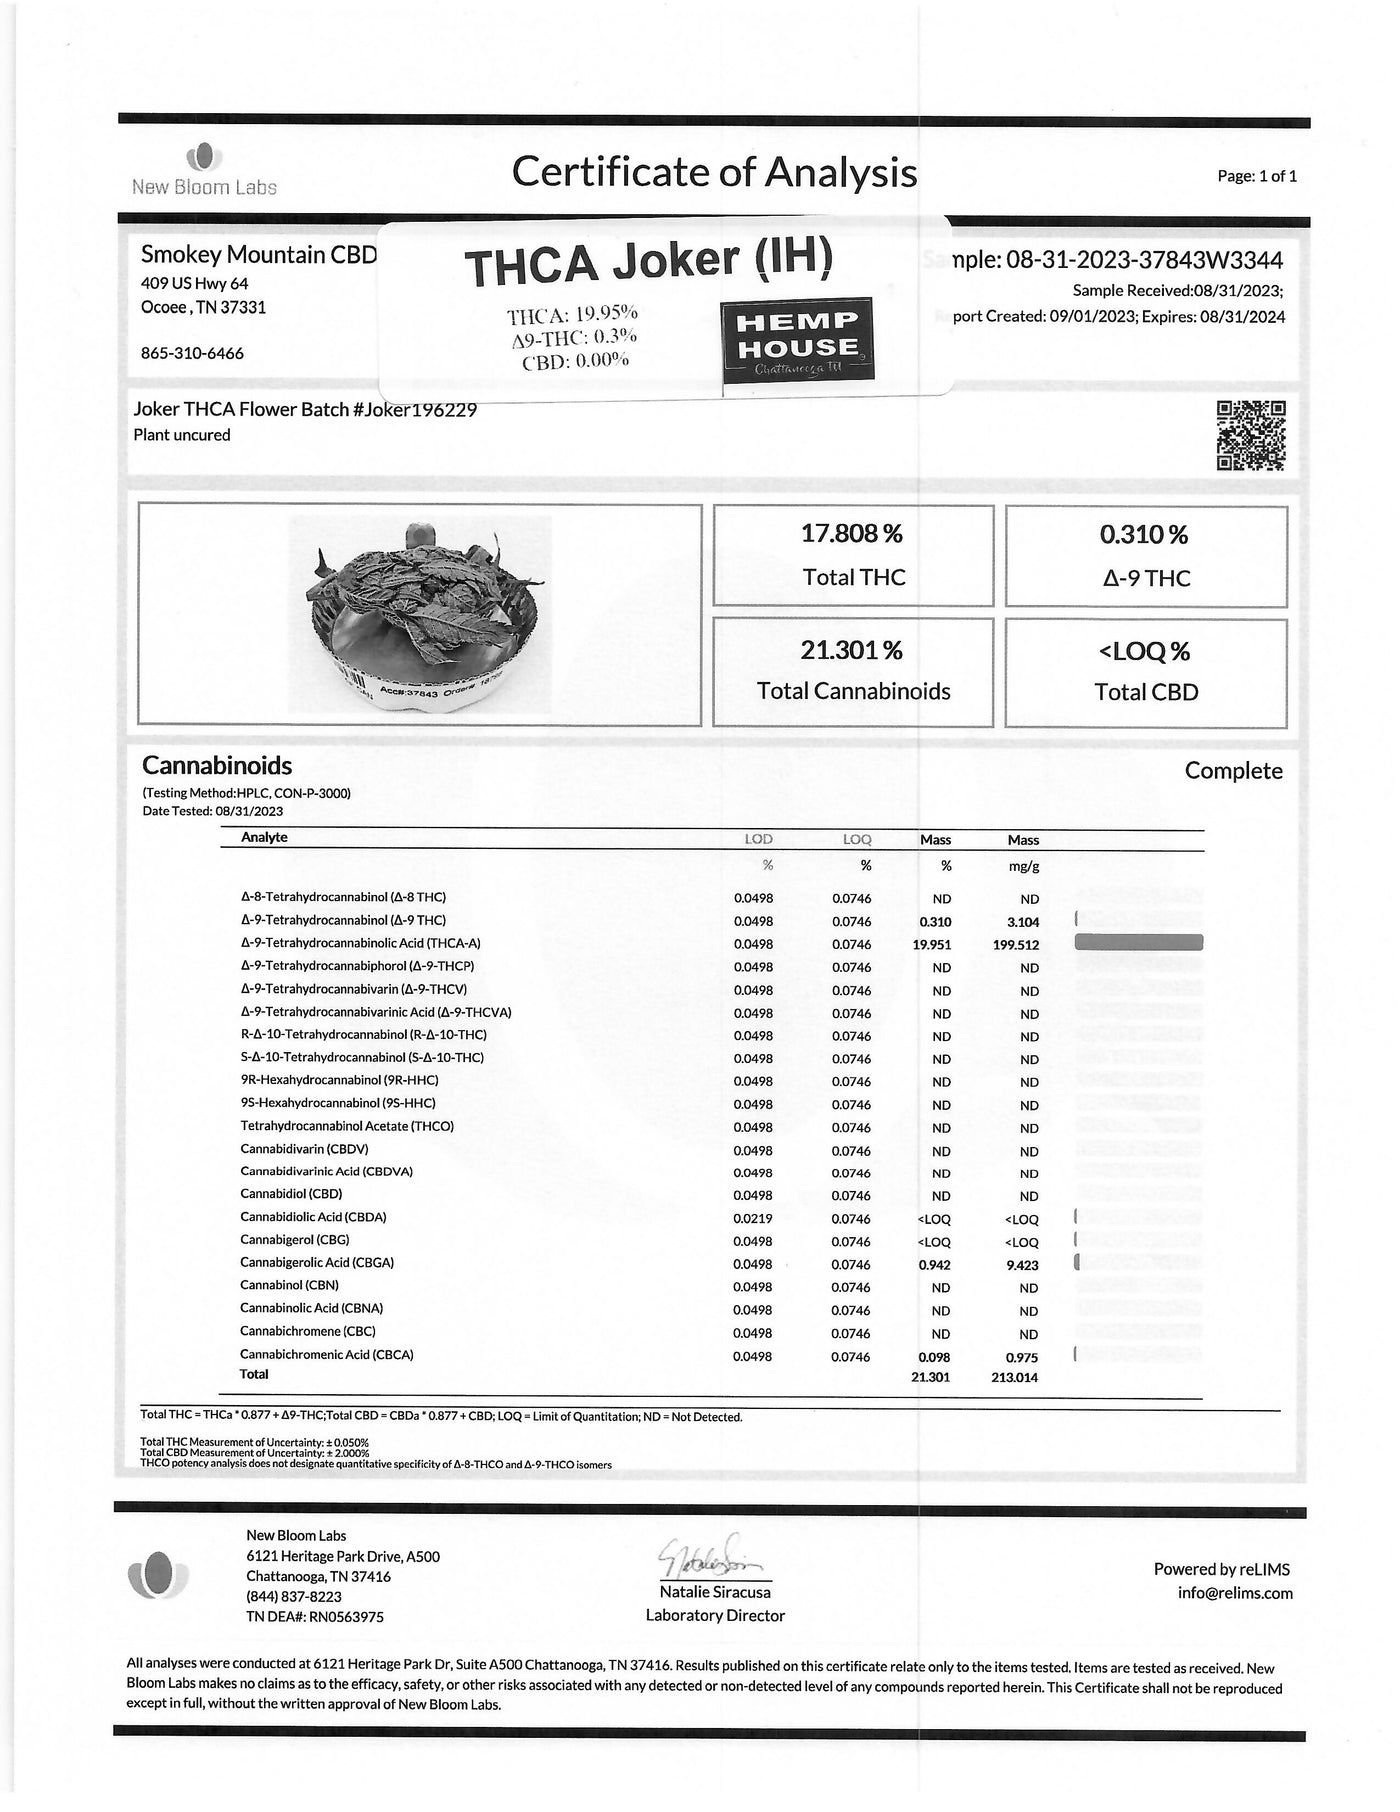 THCA Joker (IH) - Flower